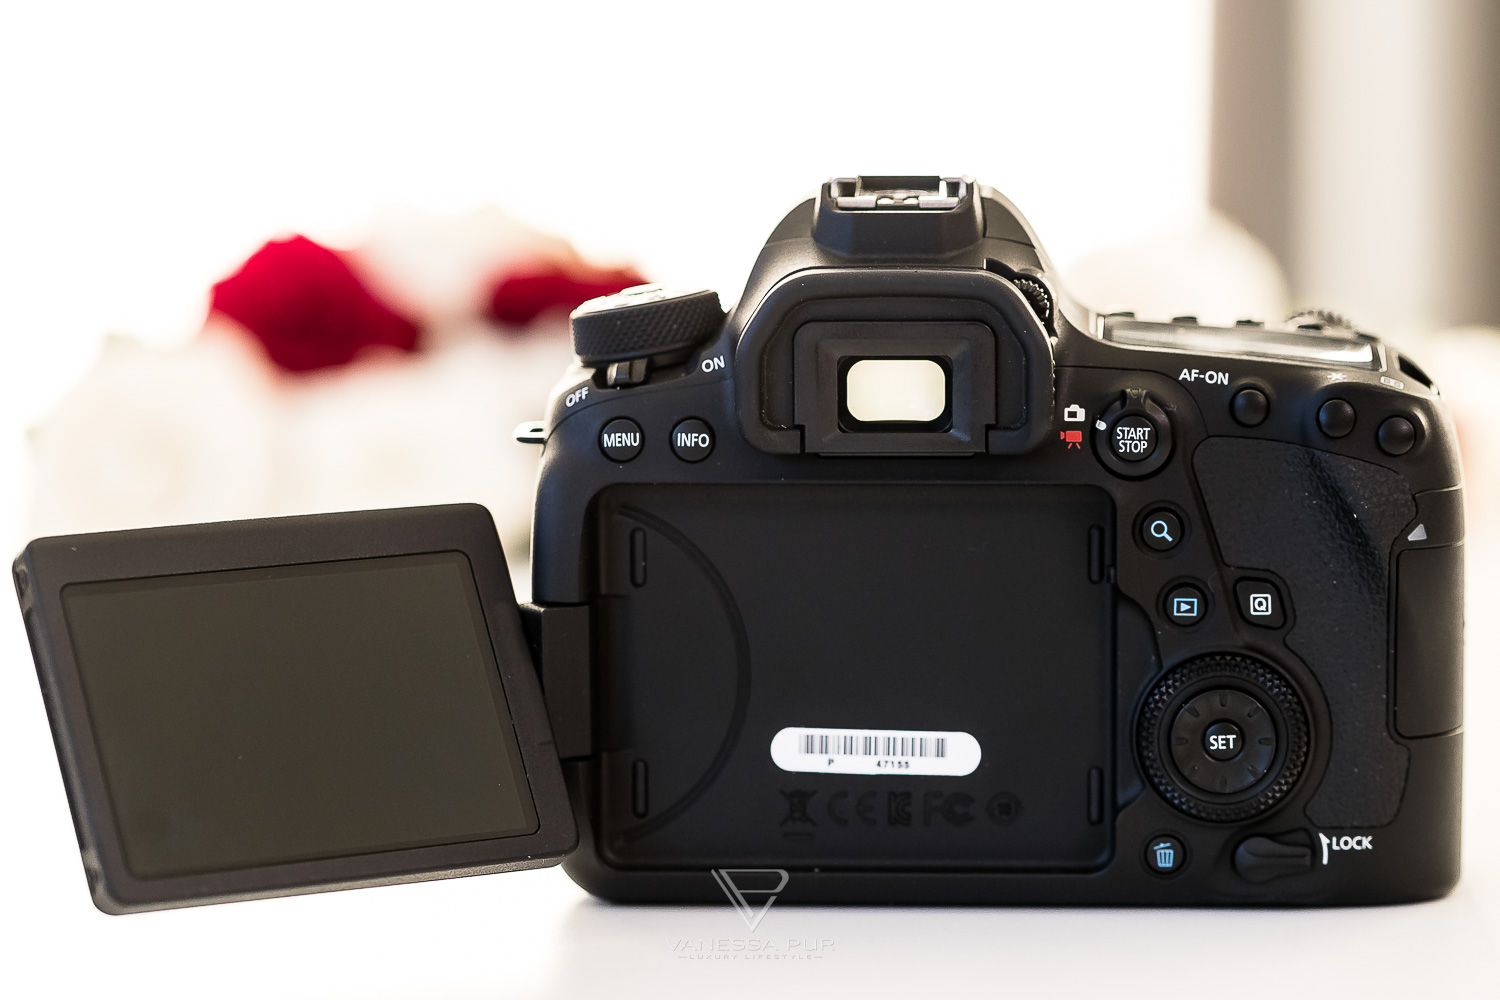 Canon EOS 6D Mark II Erfahrung und Bewertung - Die Einsteiger-Vollformat-Kamera - Vergleich Vollformat Kamera gegen Canon 5D Mark IV und Canon EOS 80D - Video-Format, Vorteile und Nachteile - Kaufempfehlung, Praxistipp